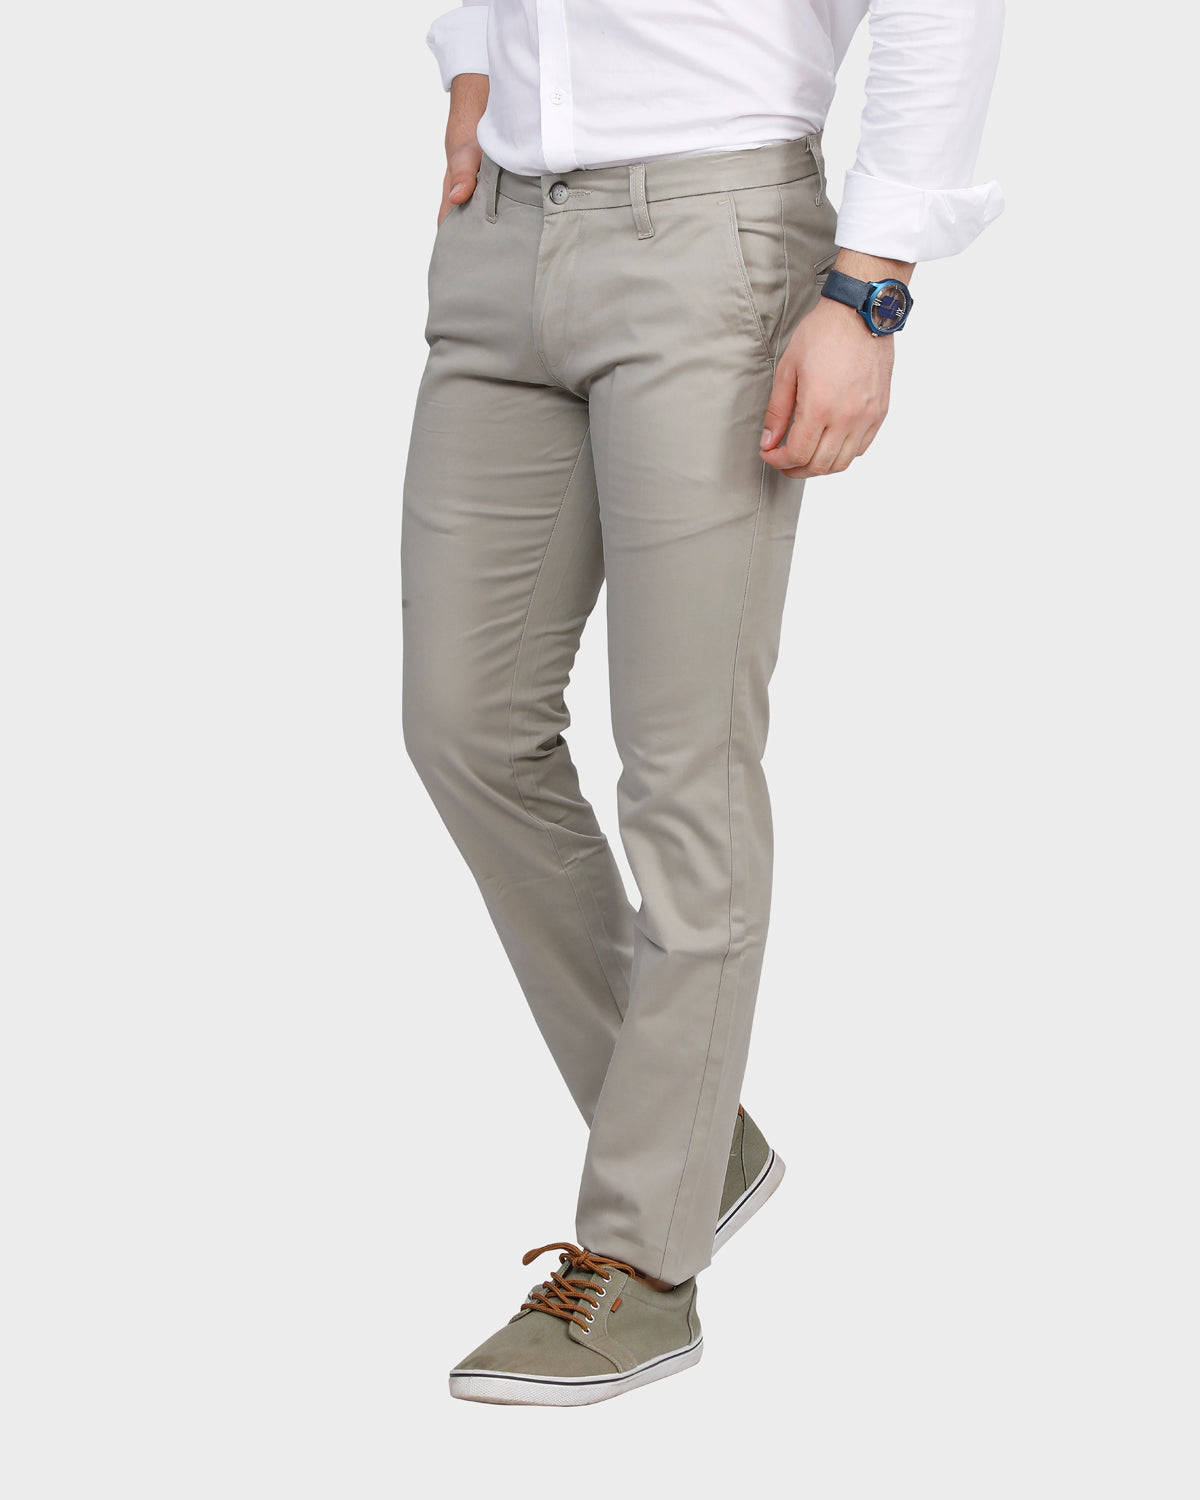 Men's  Slim Fit Pant- Lt. Grey